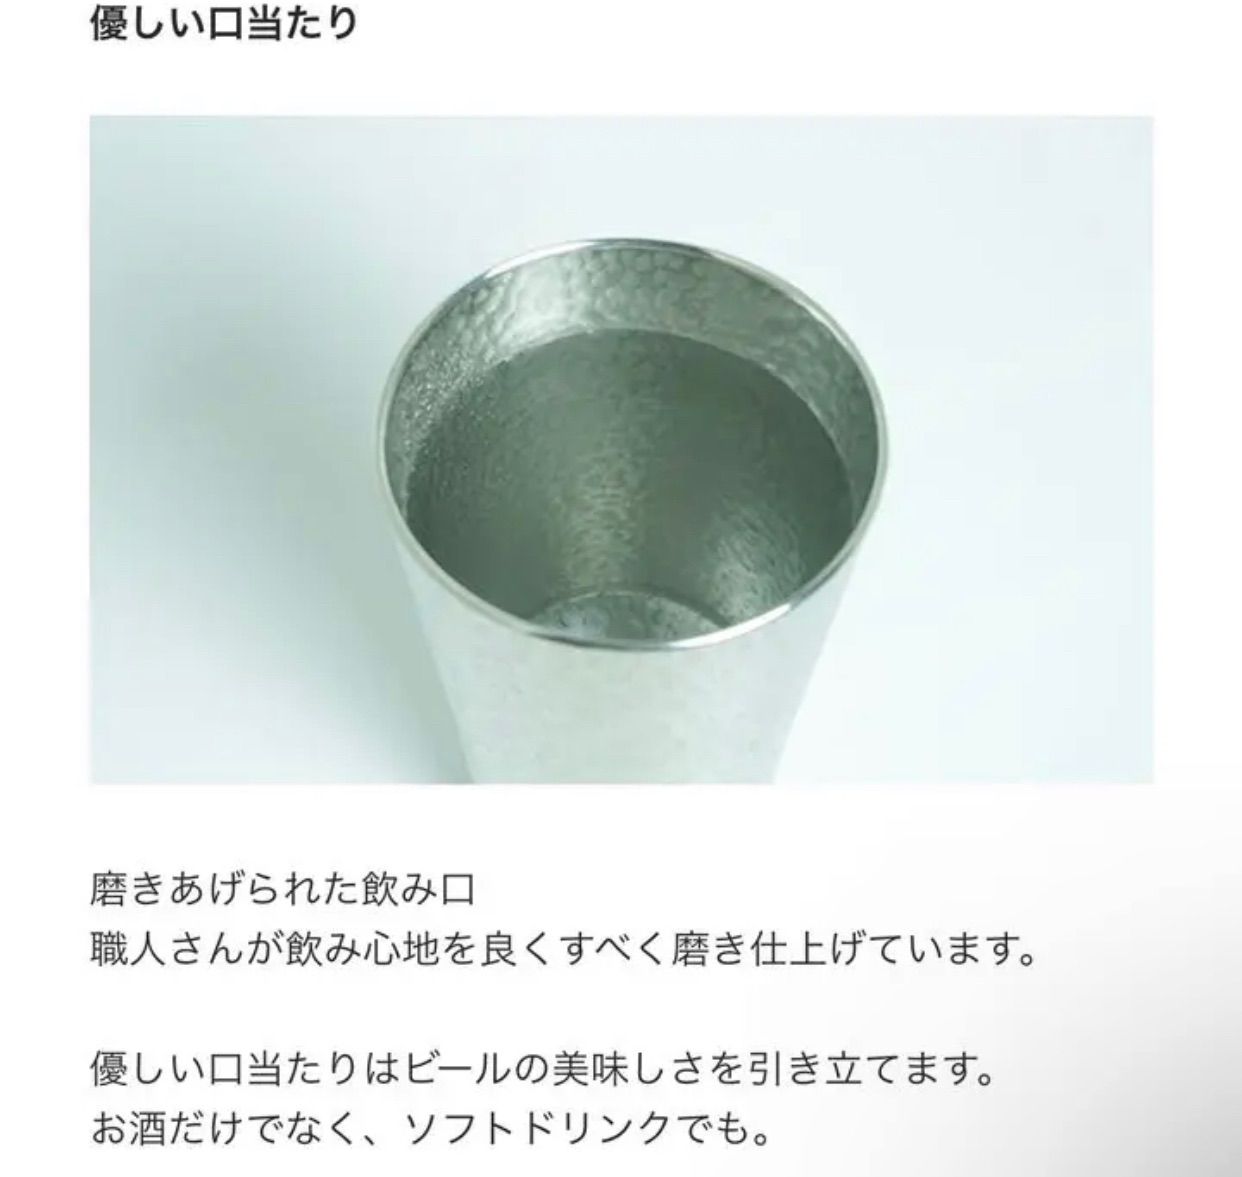 錫製 ペアグラス 錫製タンブラー セット 日本国産 大阪浪華錫器 - メルカリ